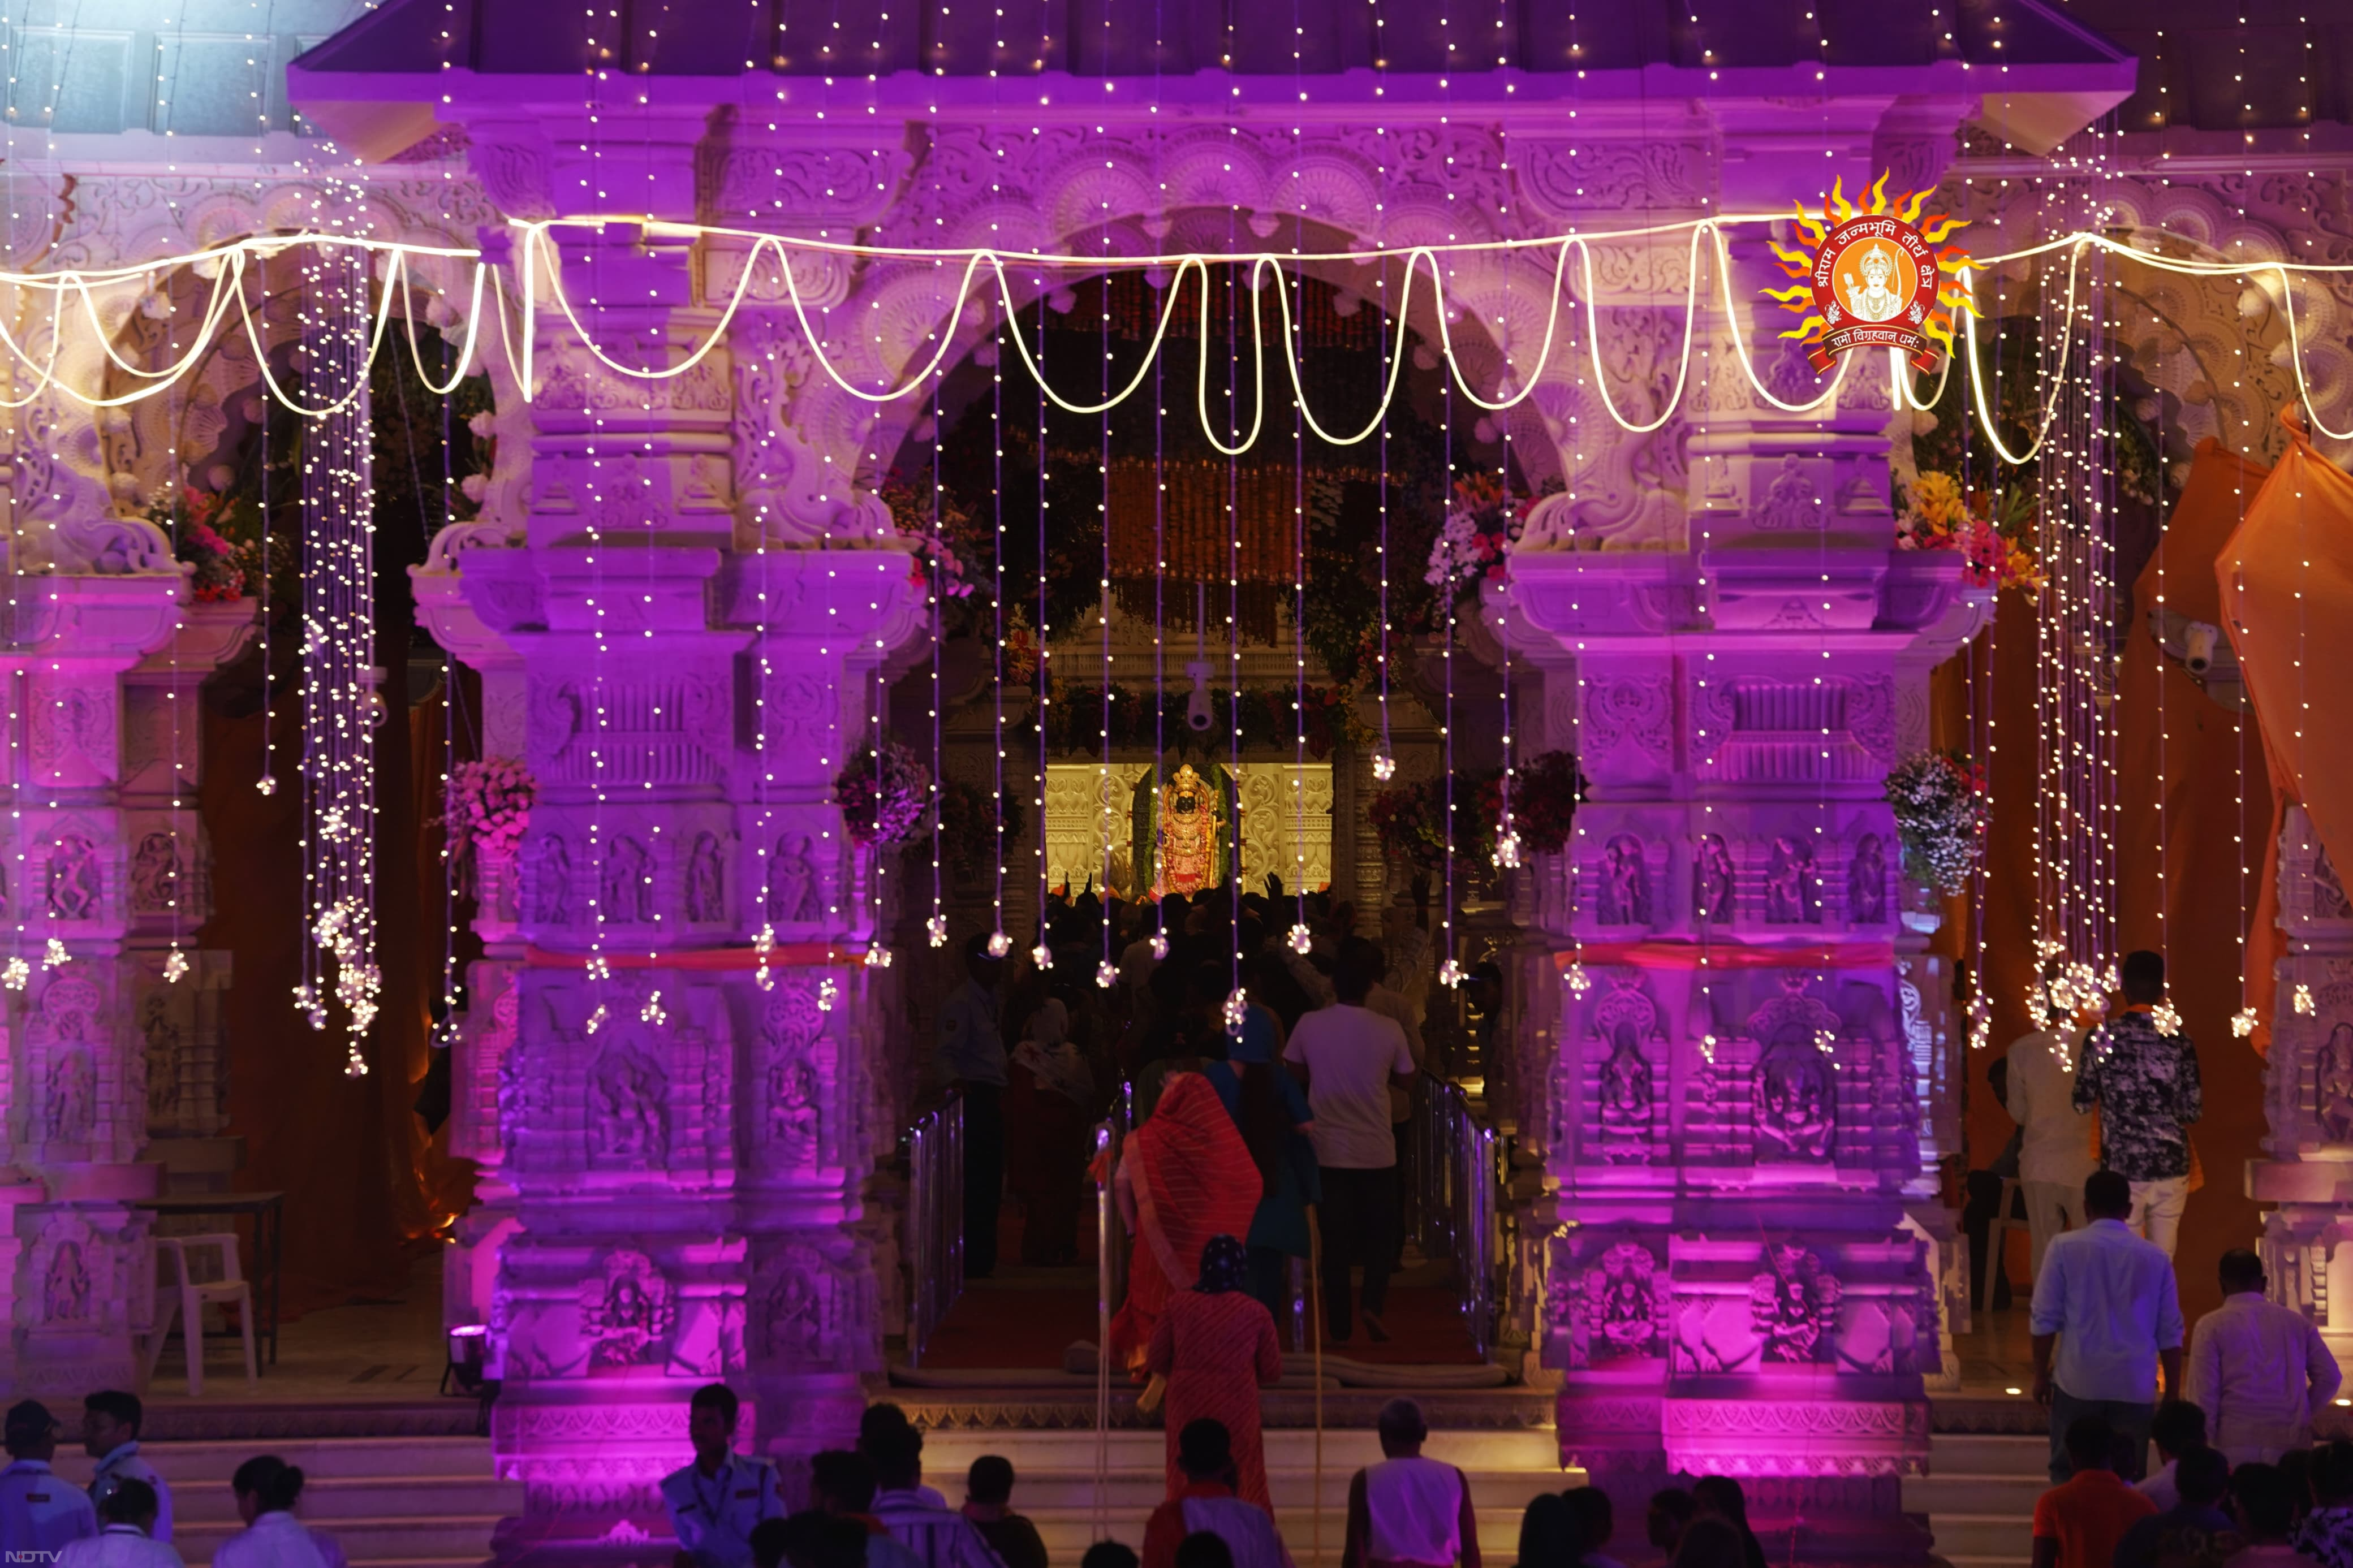 रंग-बिरंगी रोशनी से जगमगा उठा अयोध्‍या राम मंदिर, देखें खूबसूरत तस्‍वीरें